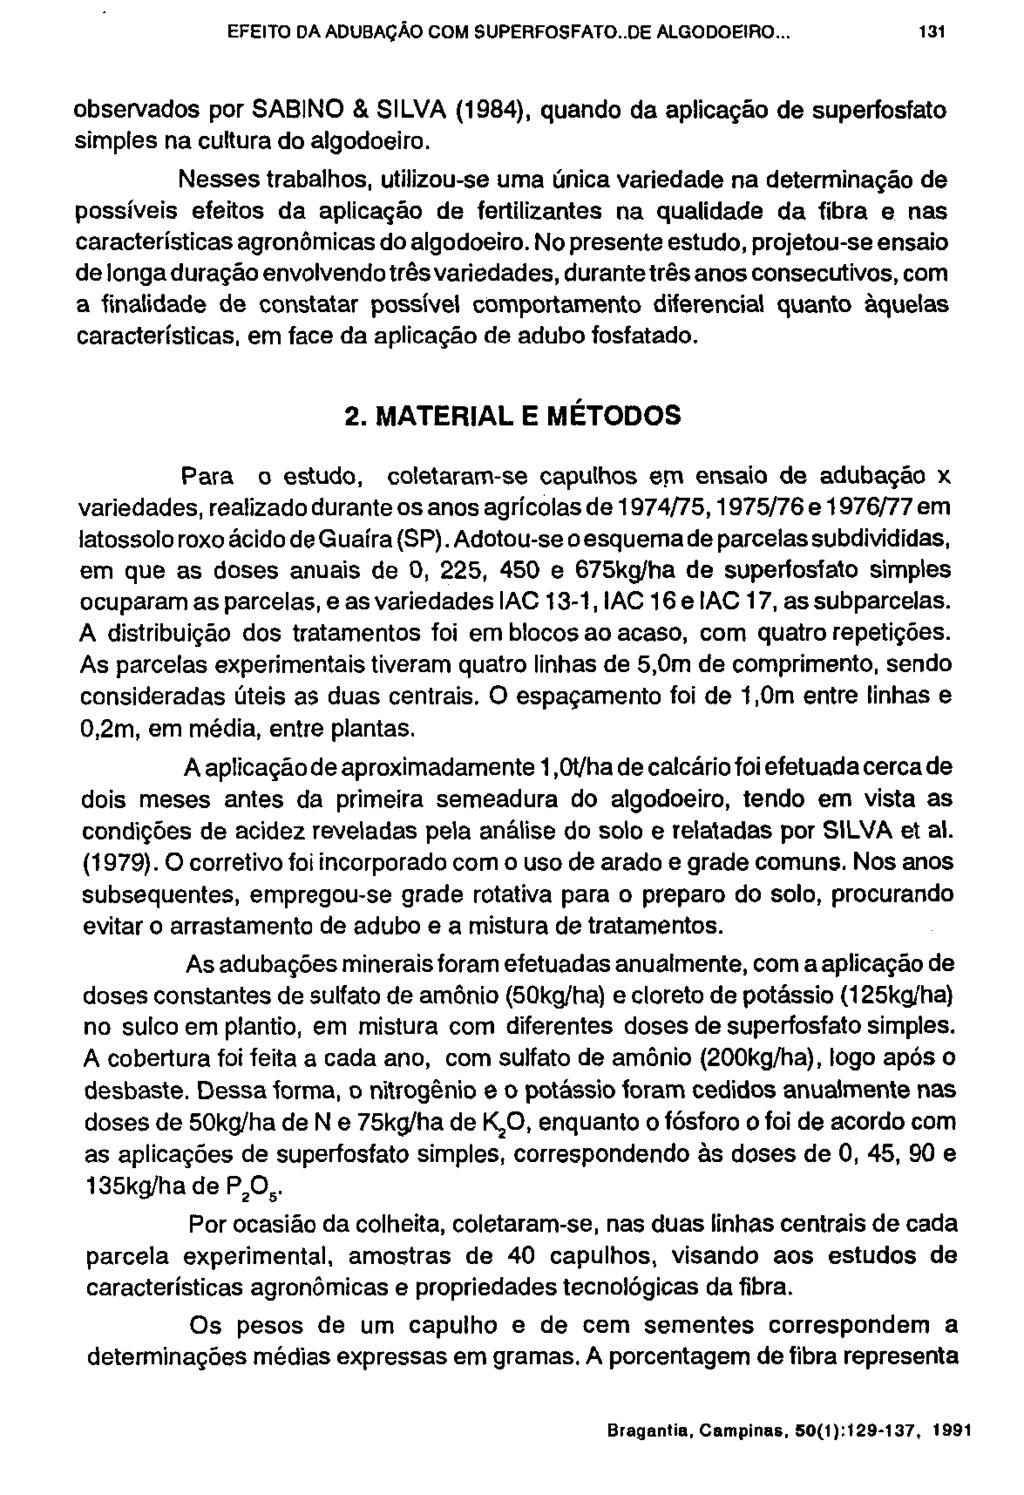 observados por SABINO & SILVA (1984), quando da aplicação de superfosfato simples na cultura do algodoeiro.